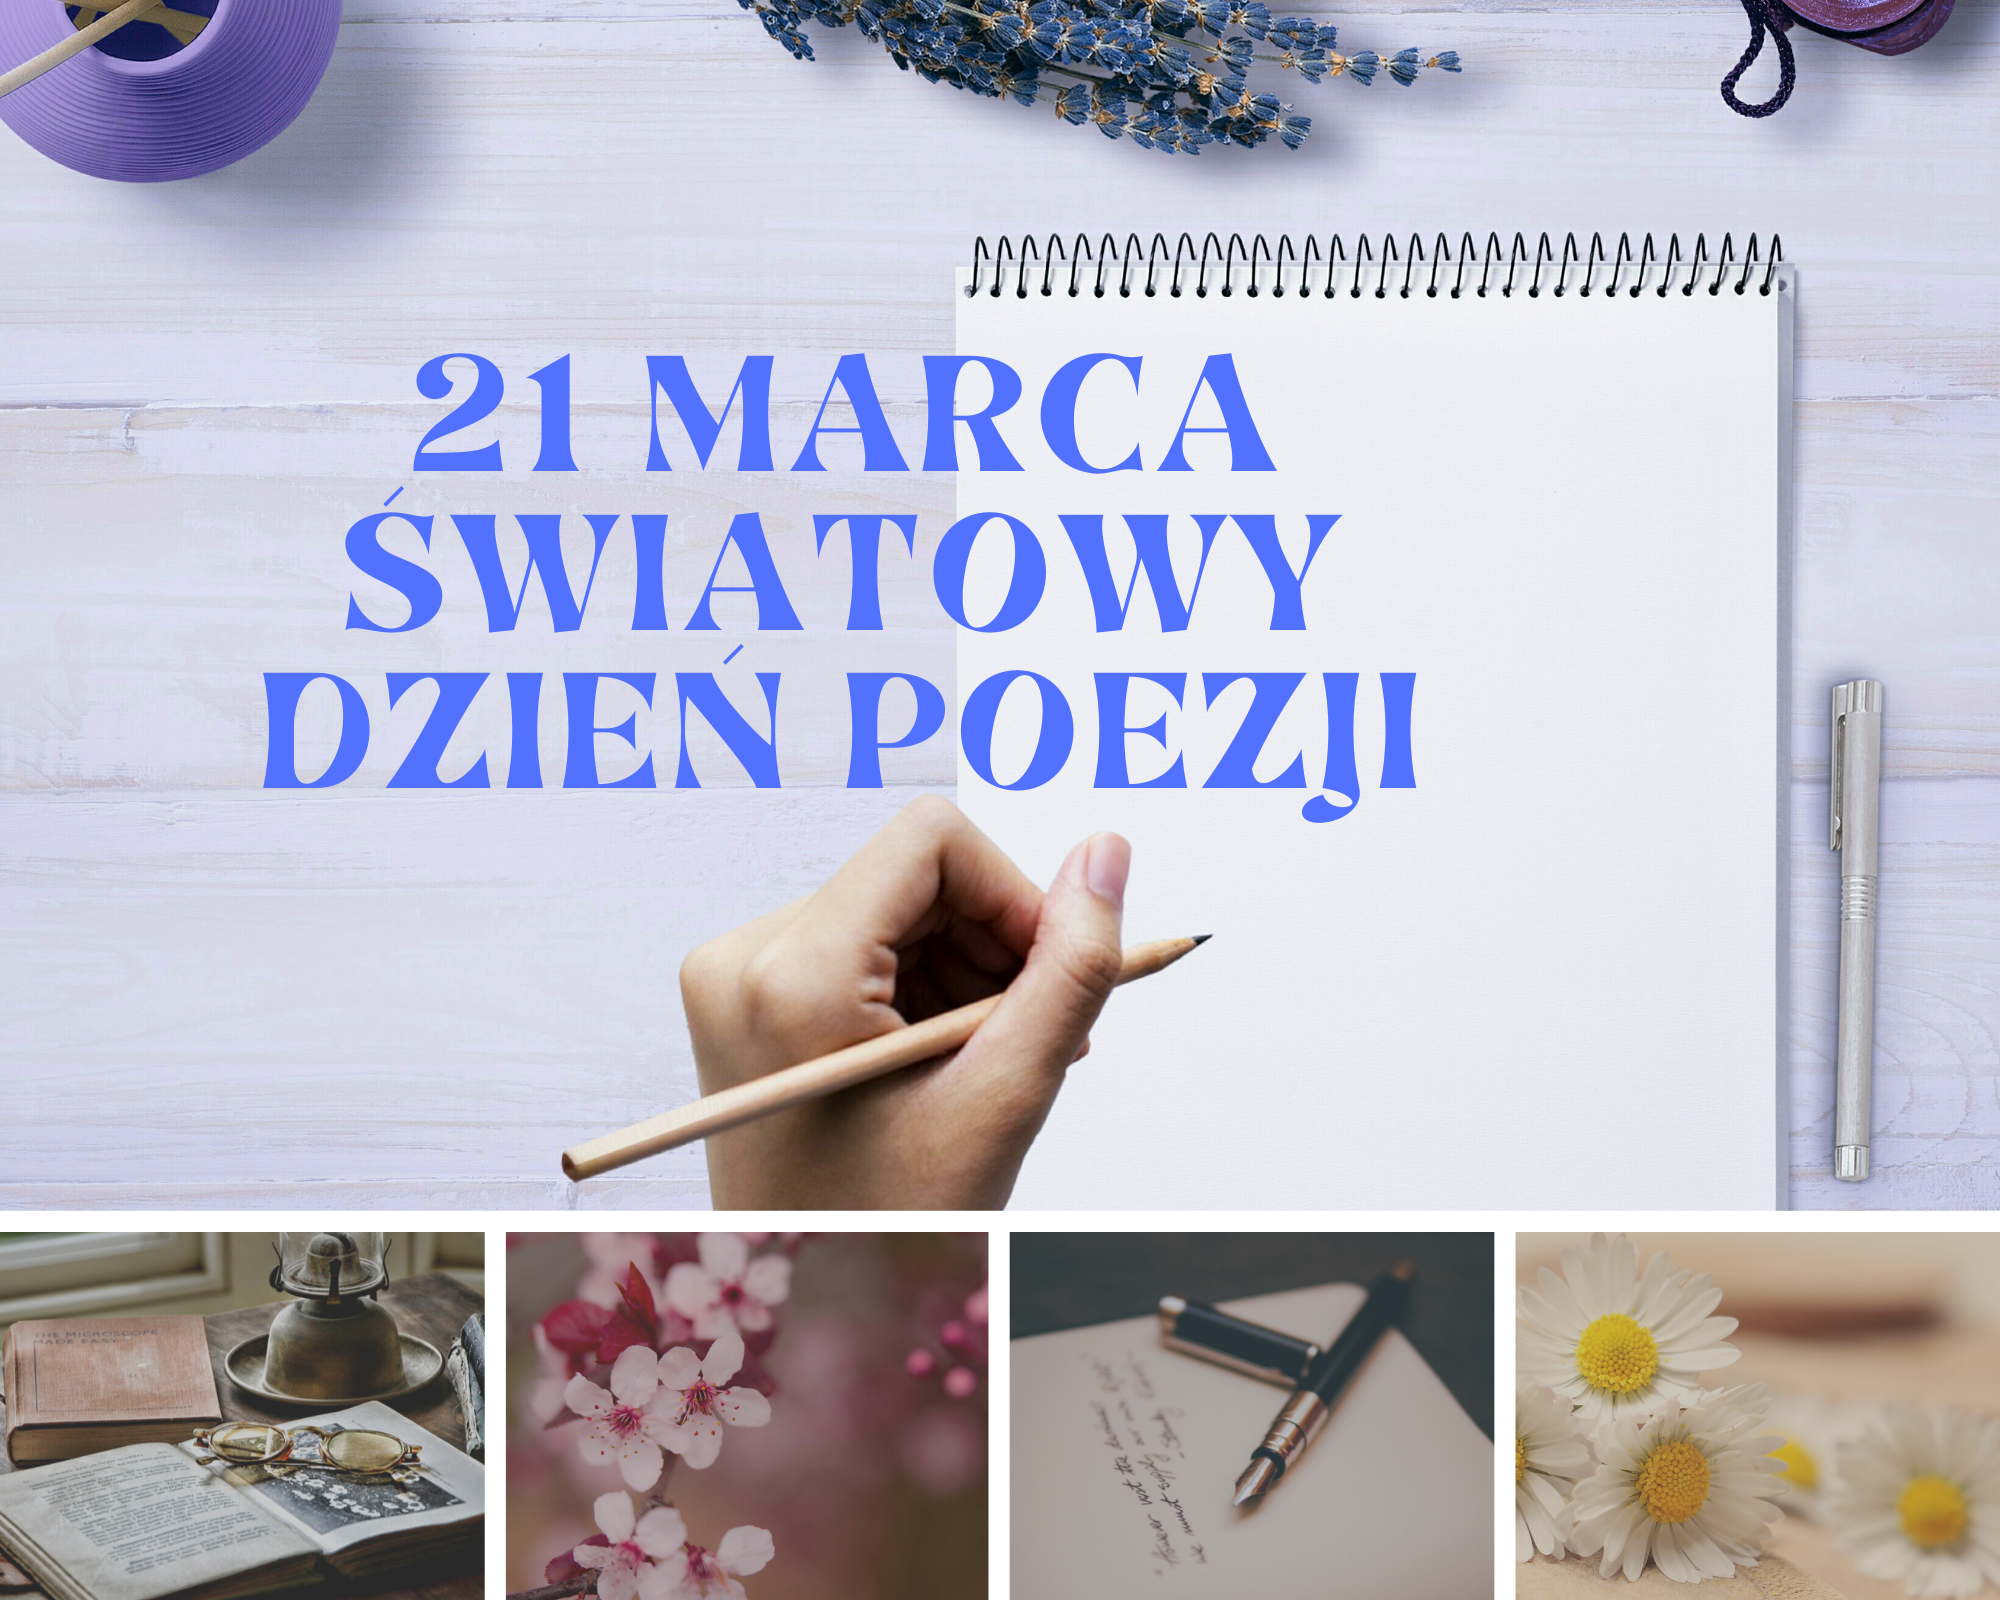 You are currently viewing 21 marca Światowy Dzień Poezji